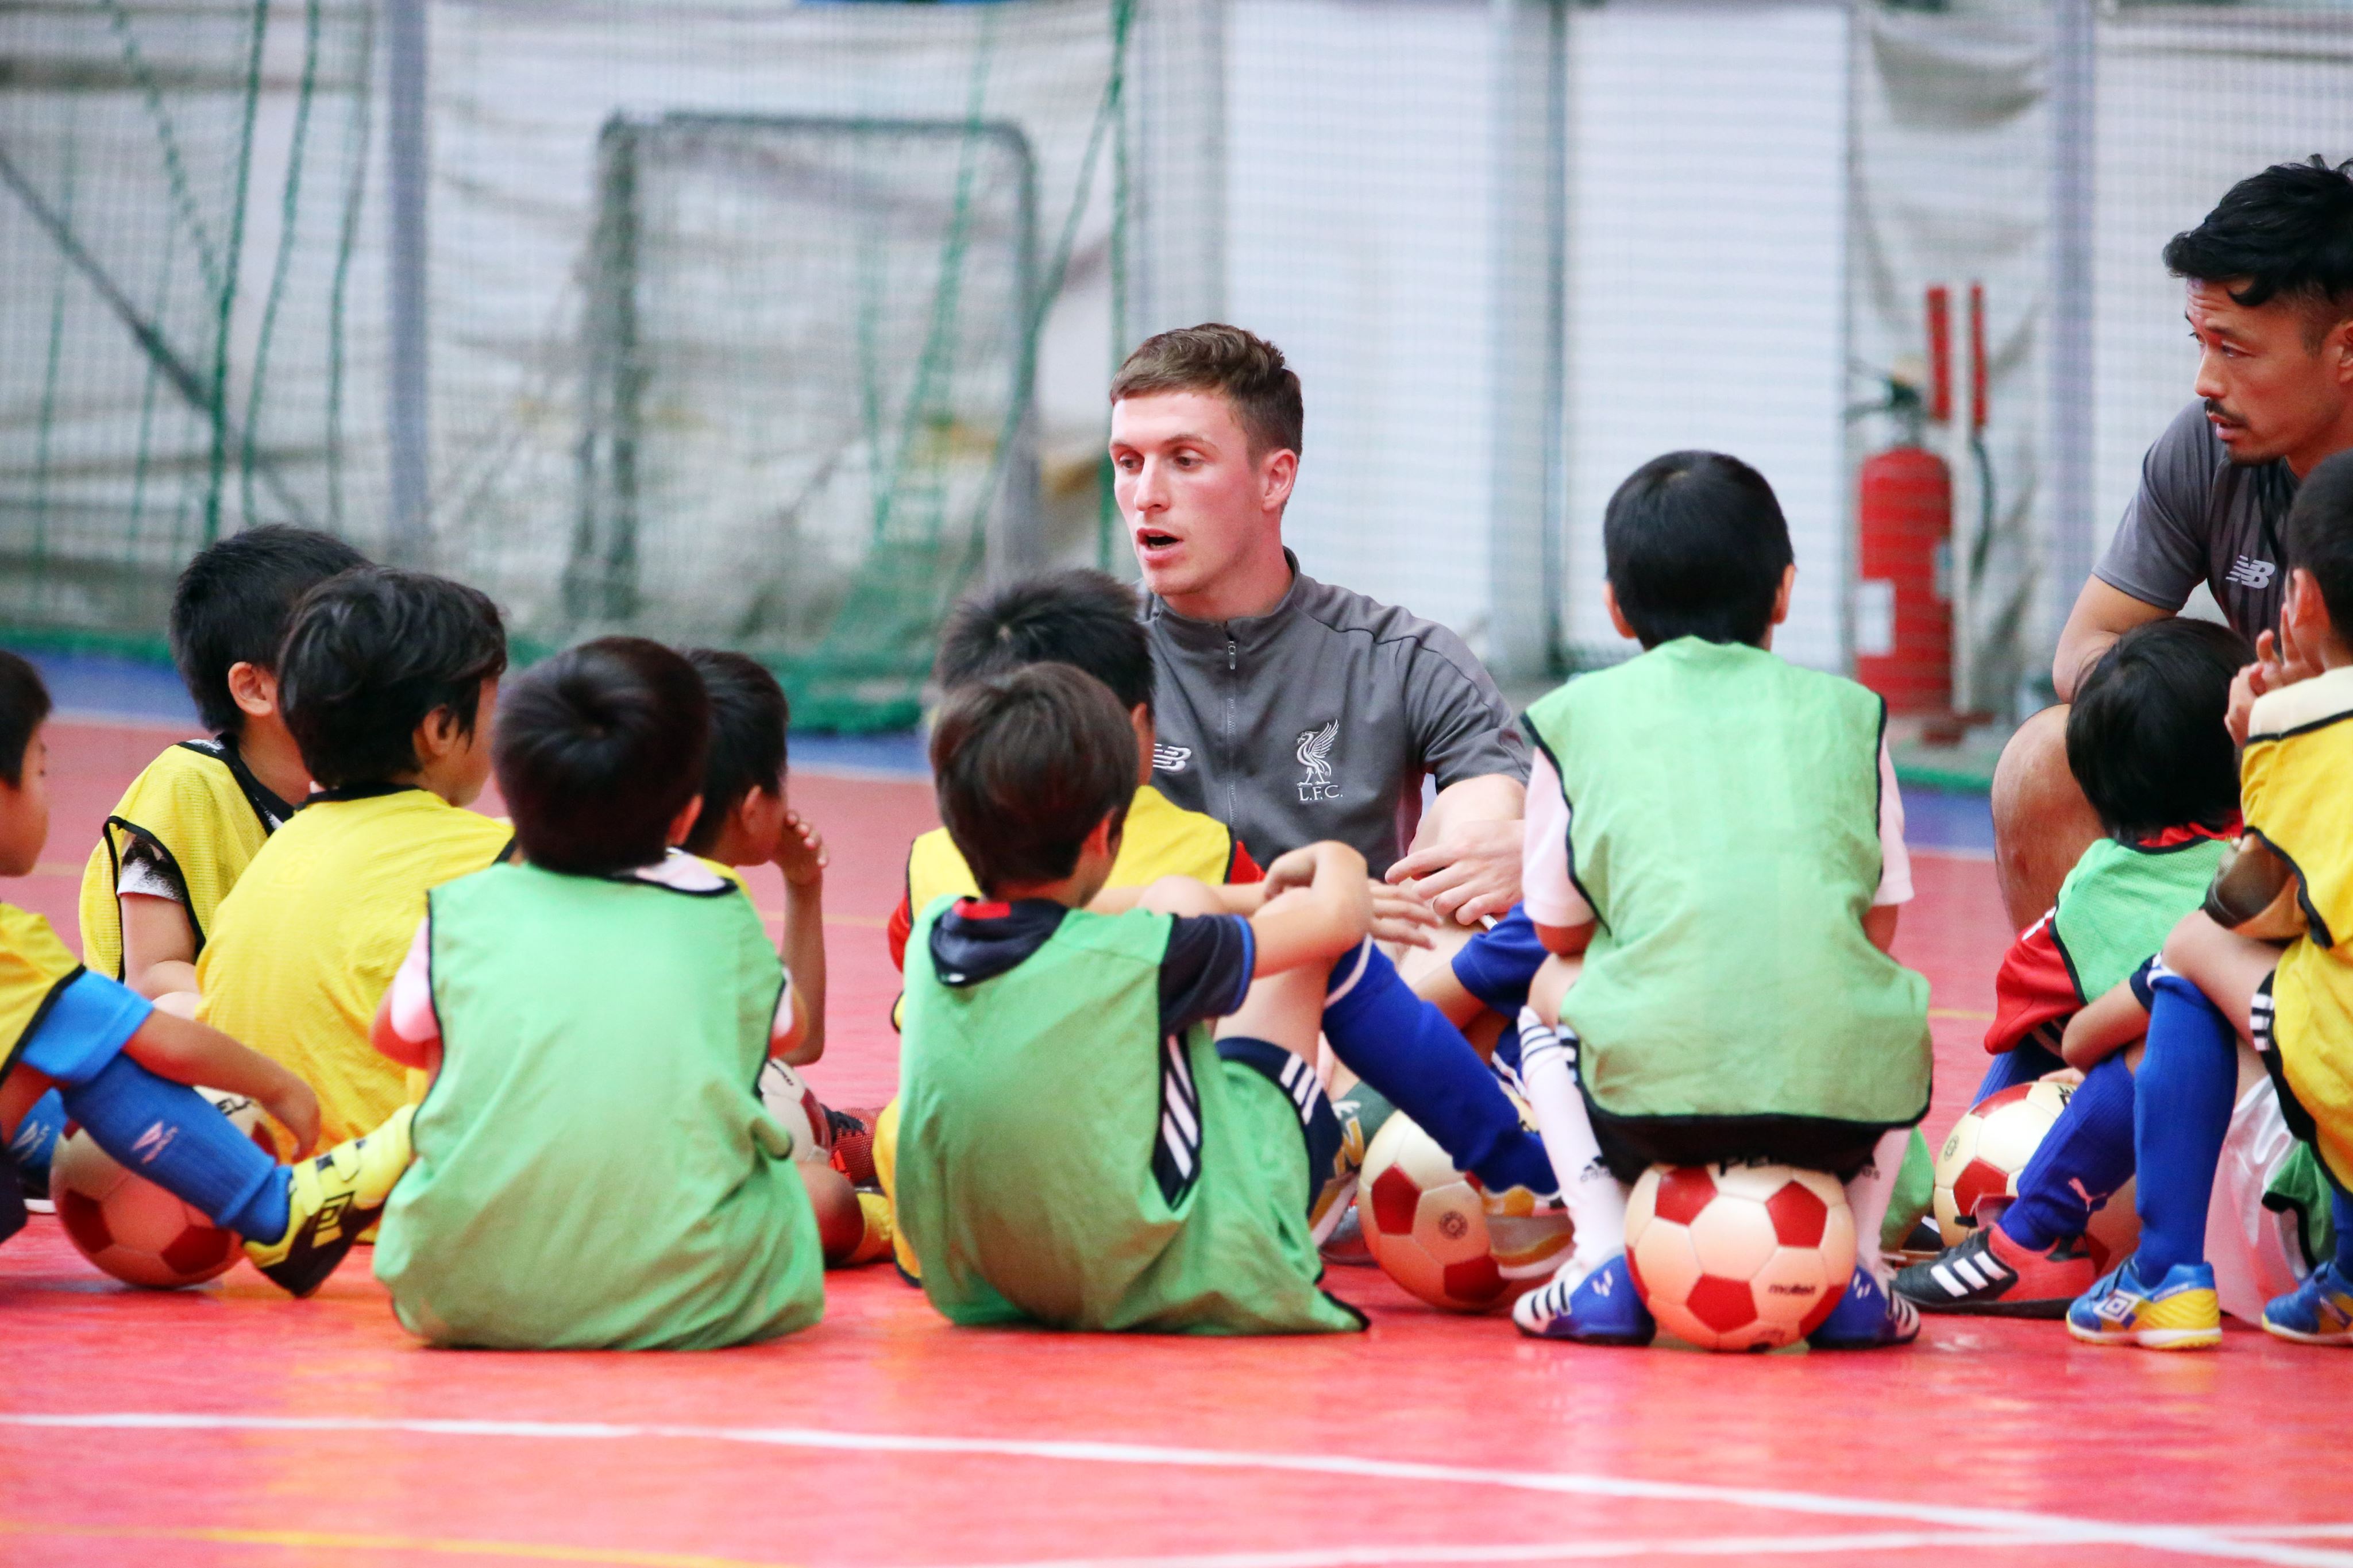 Gifte 横浜 プレミアリーグのクラブに学ぶ リバプールウェイ サッカー教室